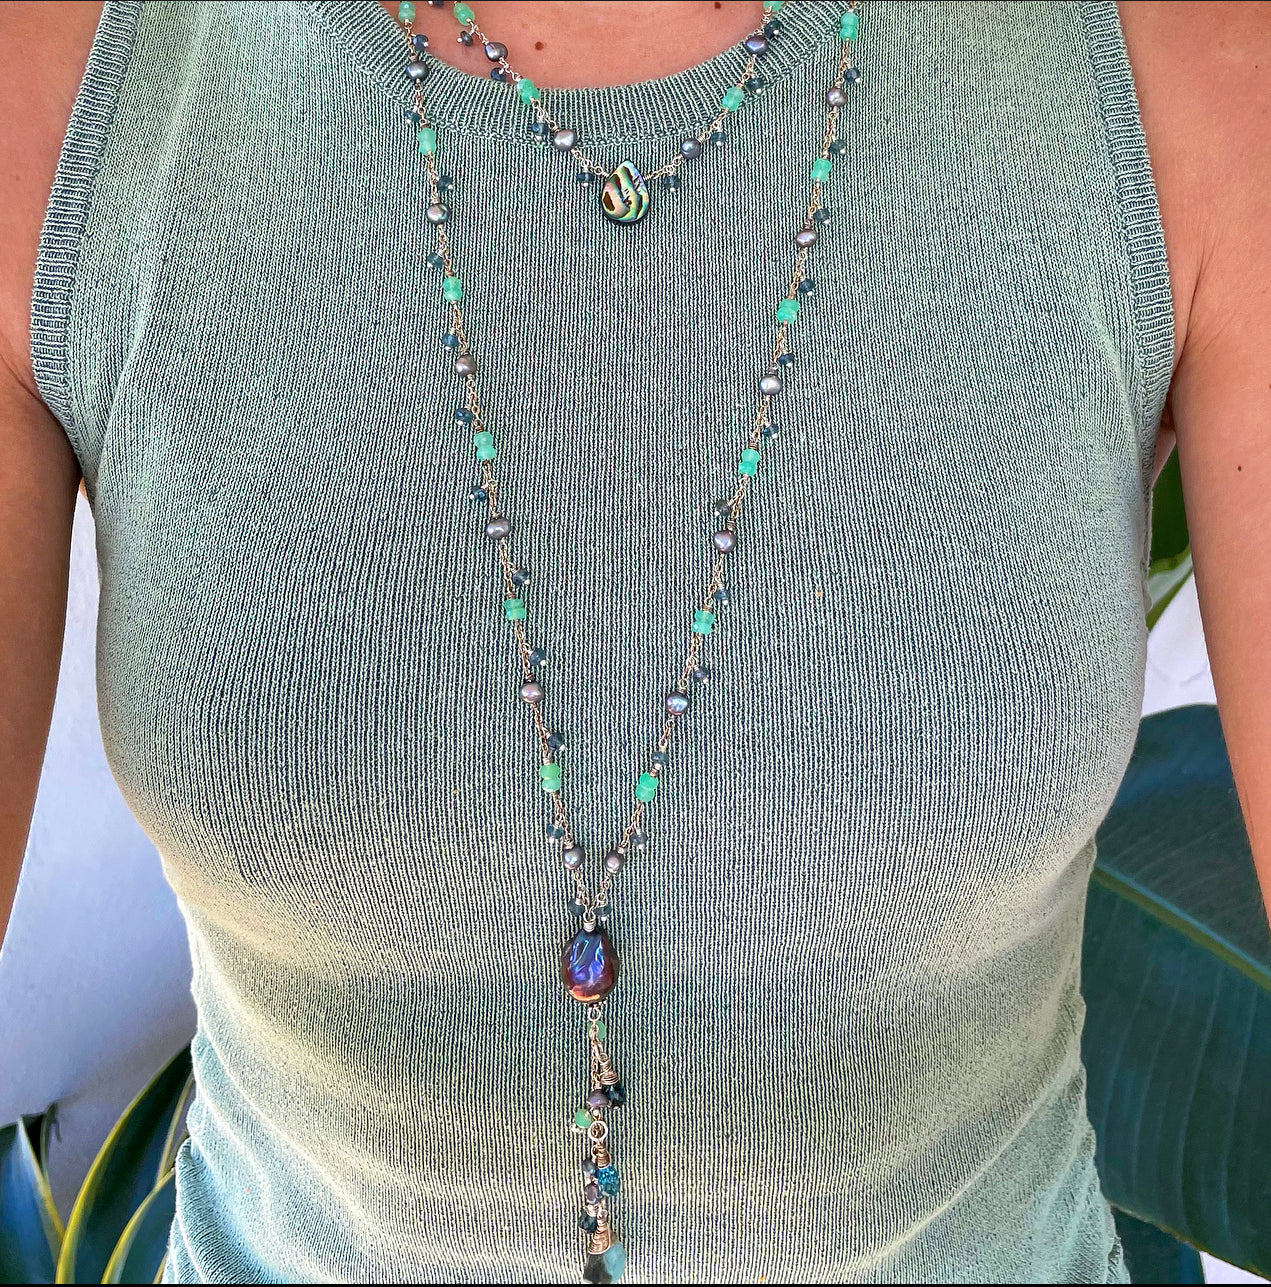 1091 - Gemstone Layering Necklace